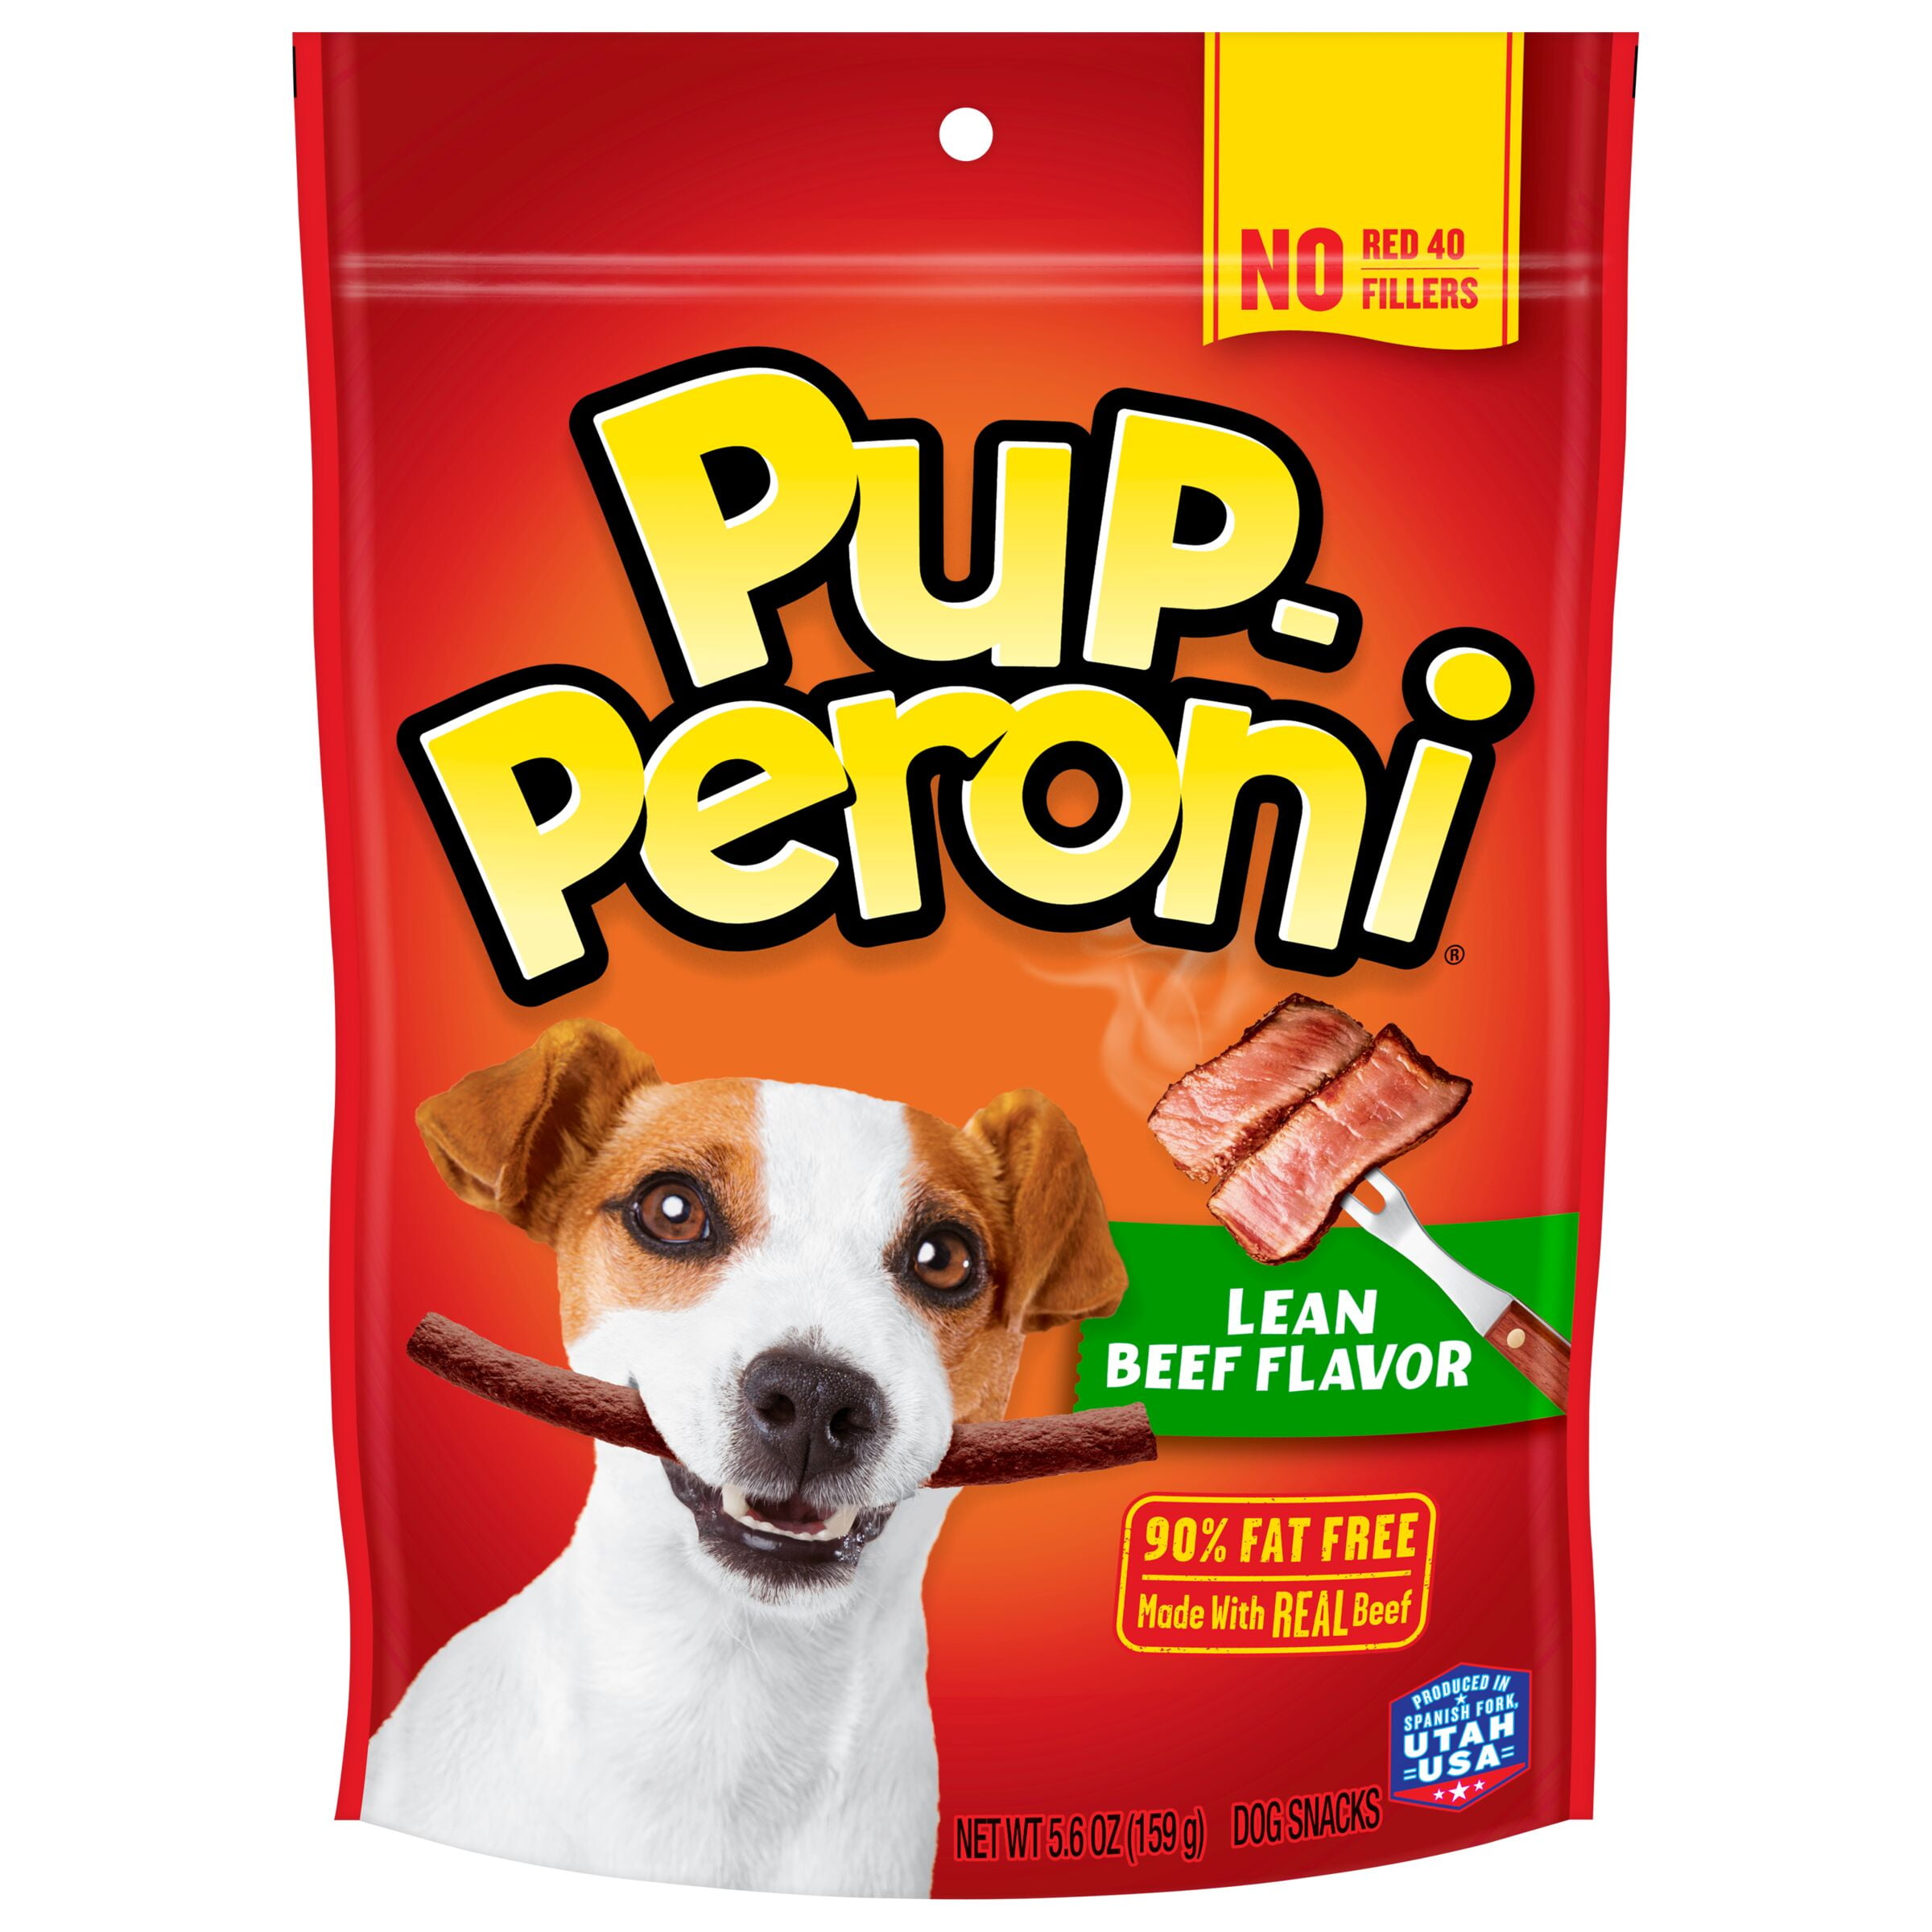 Pup-Peroni Lean Beef Flavor Dog Treats, 5.6oz Bag